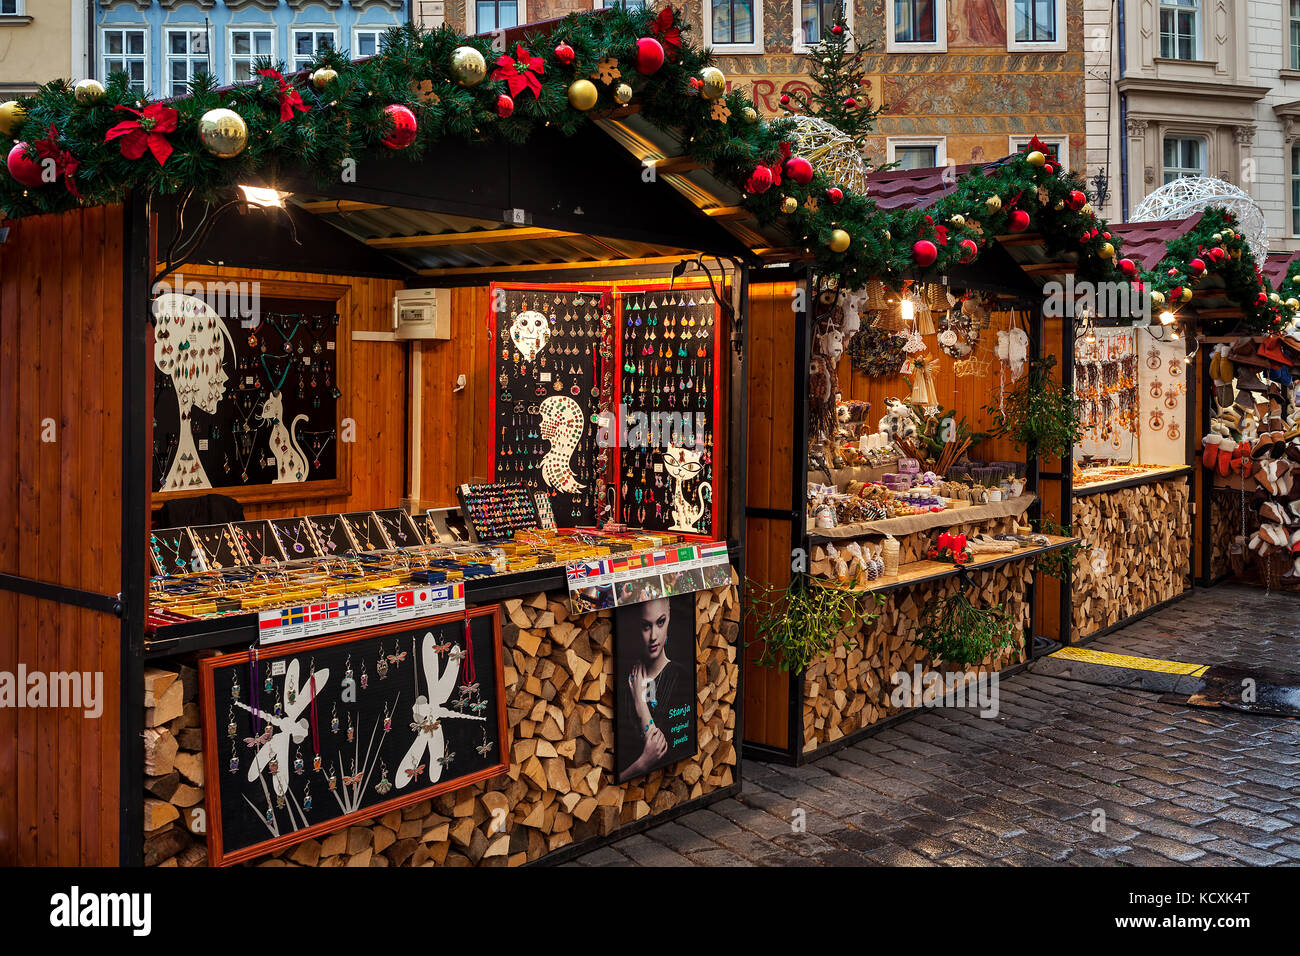 Prag, Tschechische Republik - 11. Dezember 2016: Holz- Kiosk mit Souvenirs während Weihnachtsmarkt jedes Jahr findet in Prag. Stockfoto